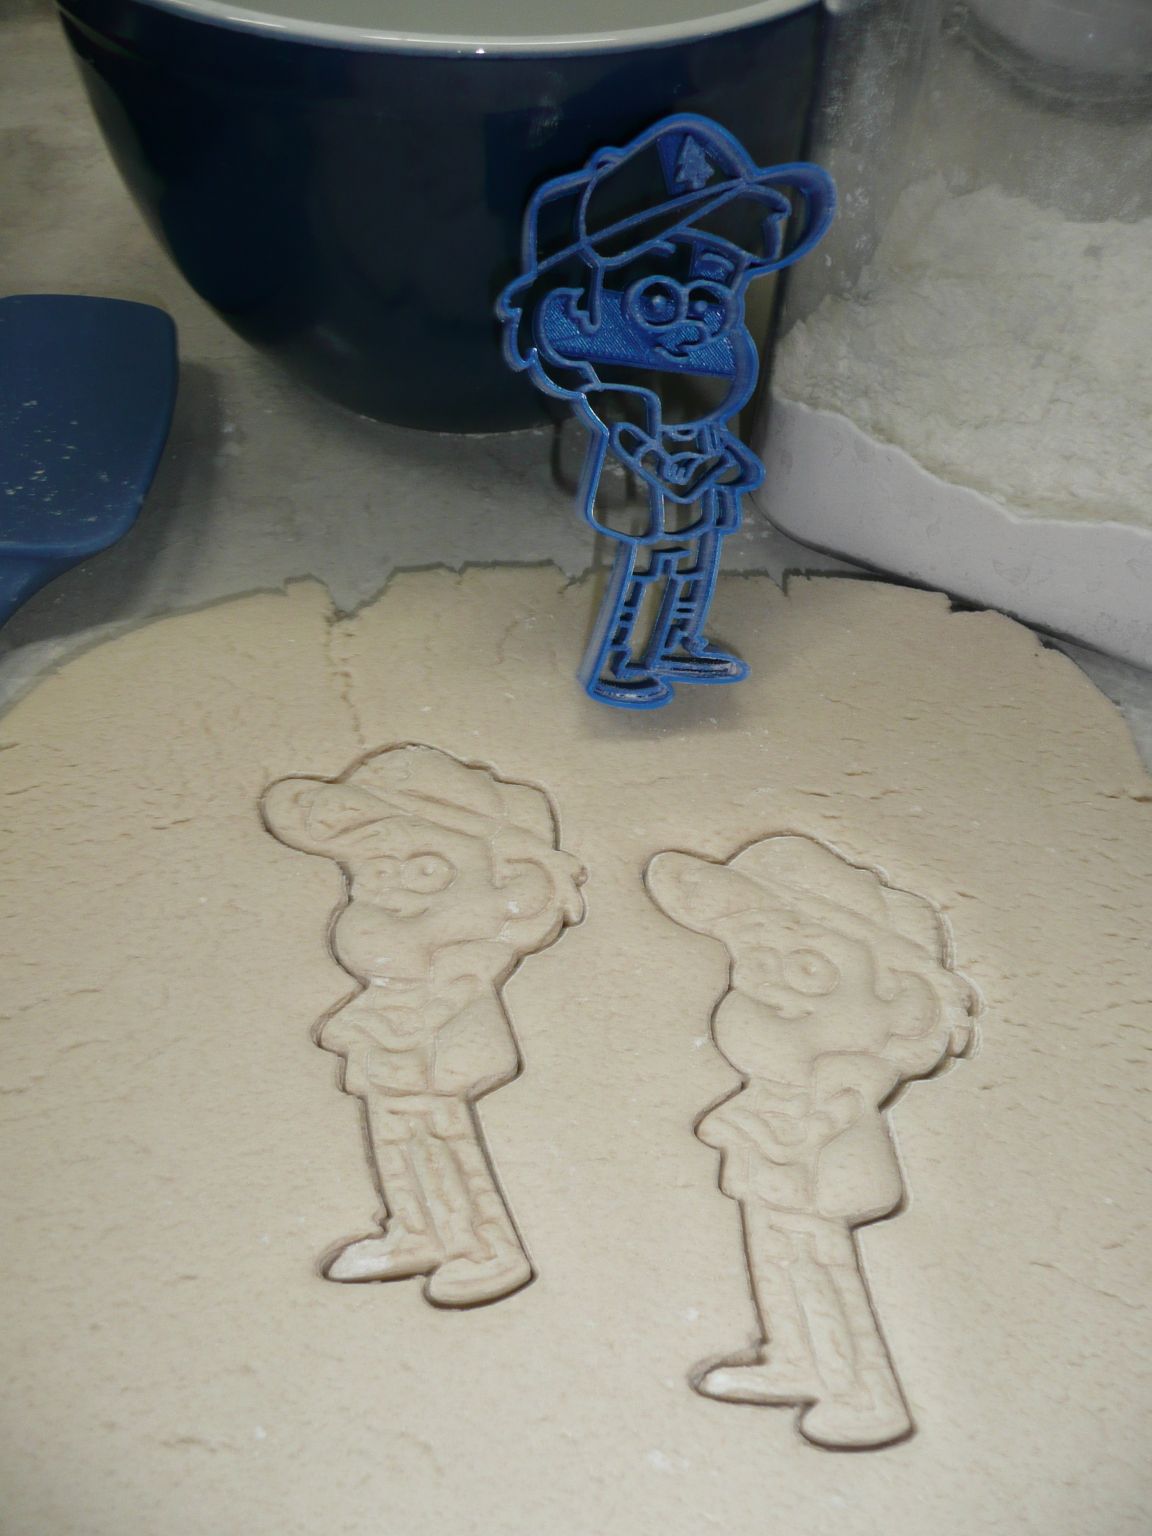 Dipper Pines Gravity Falls Disney Cartoon Character Cookie Cutter USA PR642